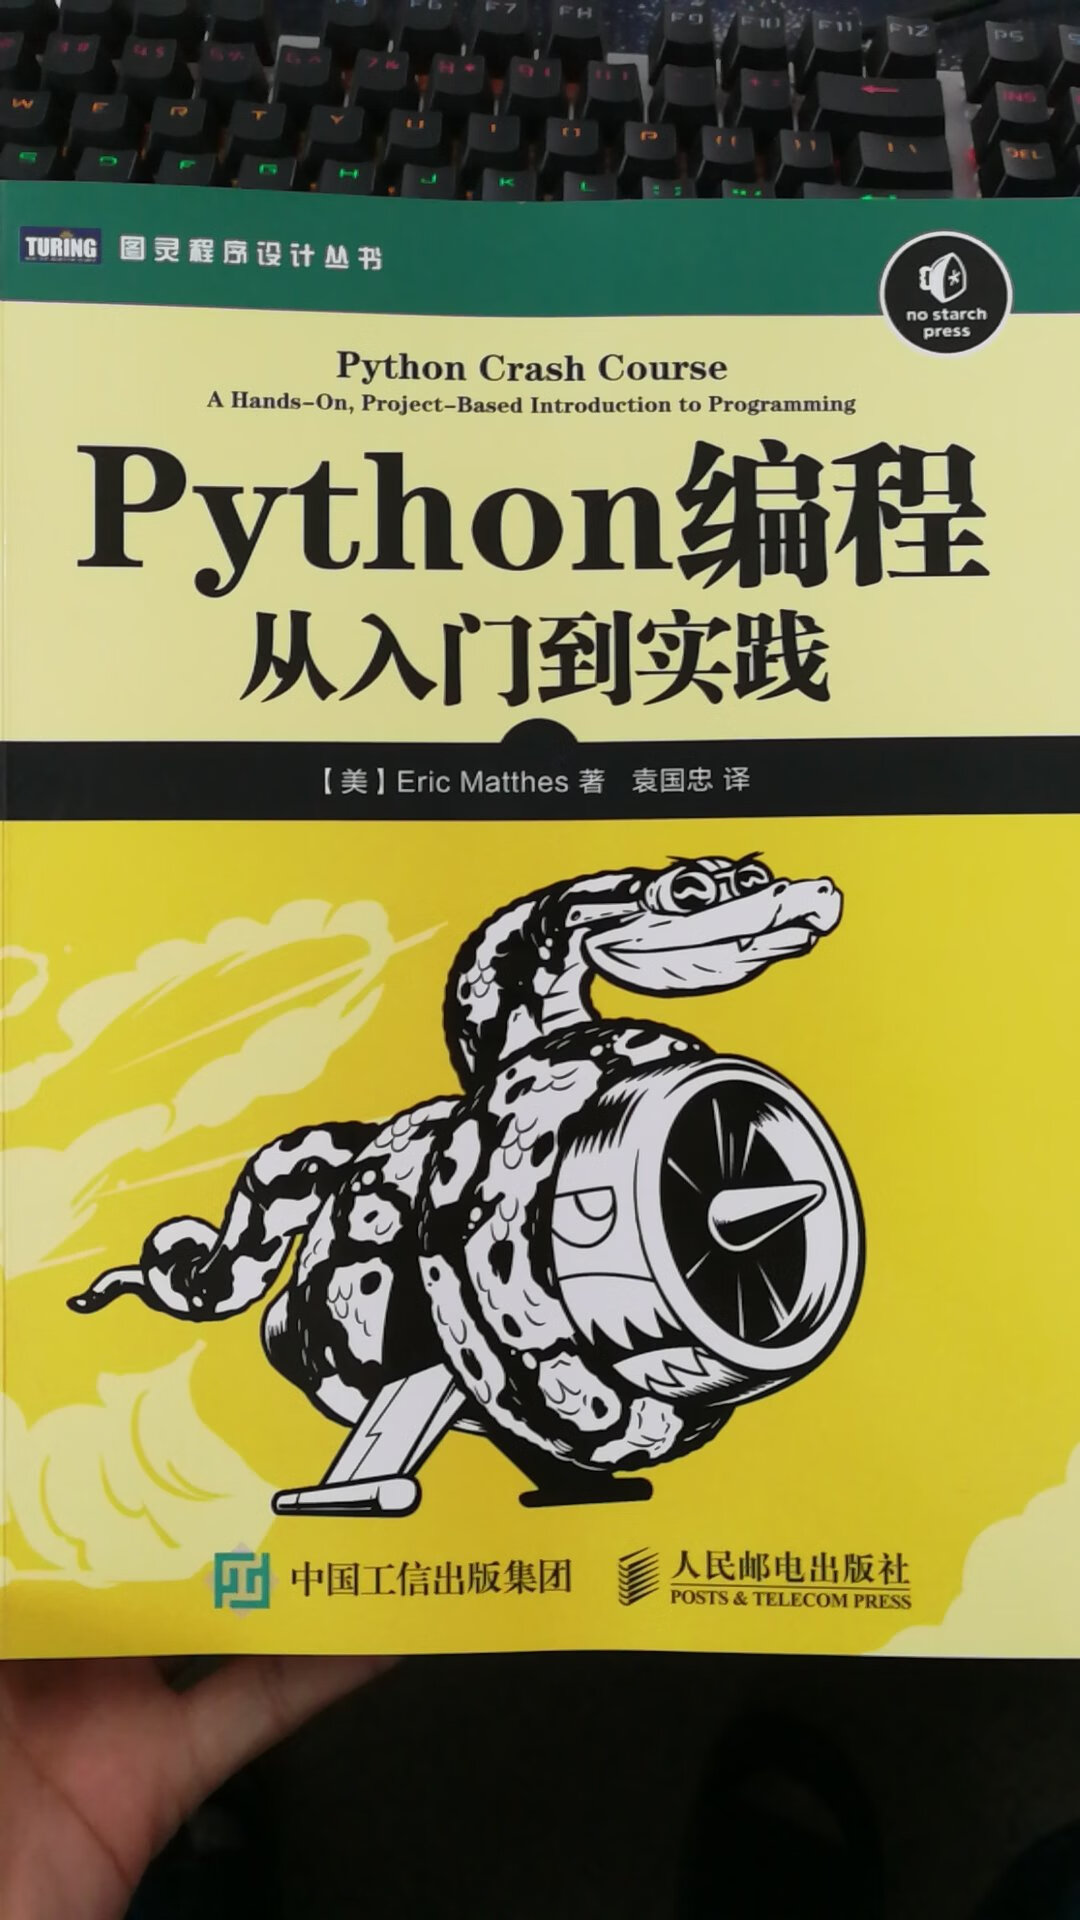 印刷清晰，正版，本书适合想用python进行软件开发的人，如果只是用python进行数值计算，推荐买别的